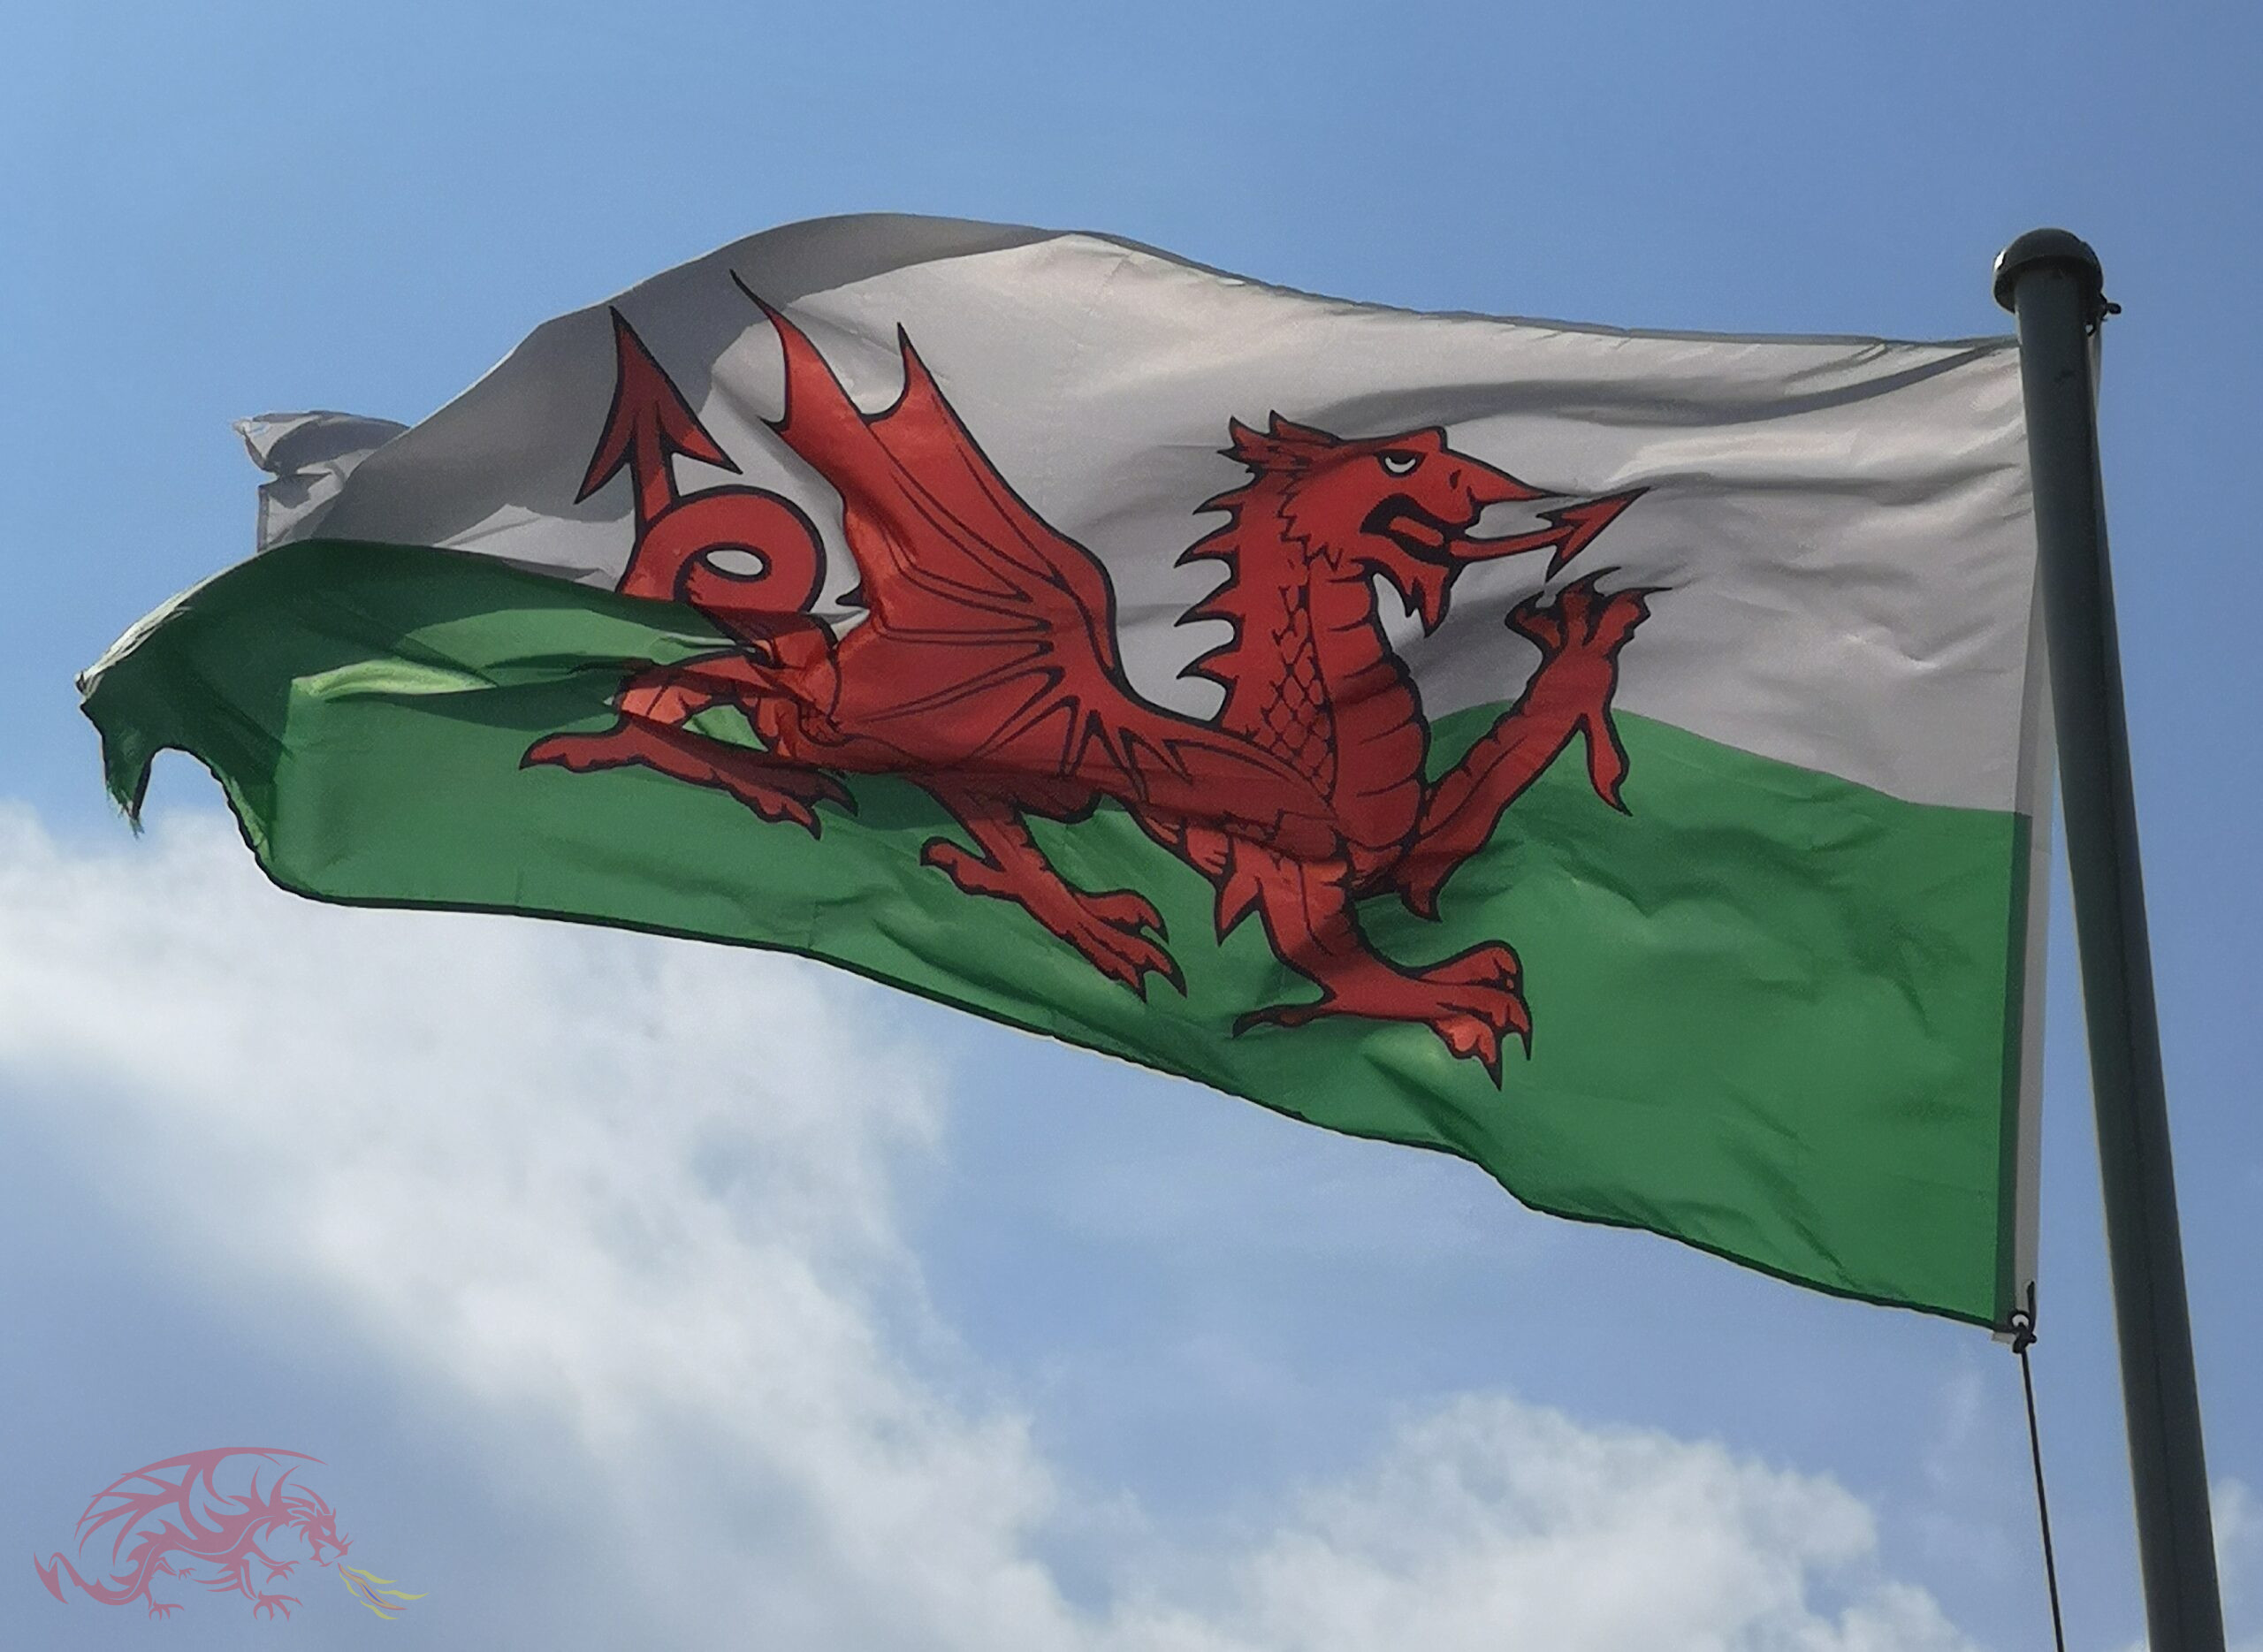 Concerns over Welsh Language target